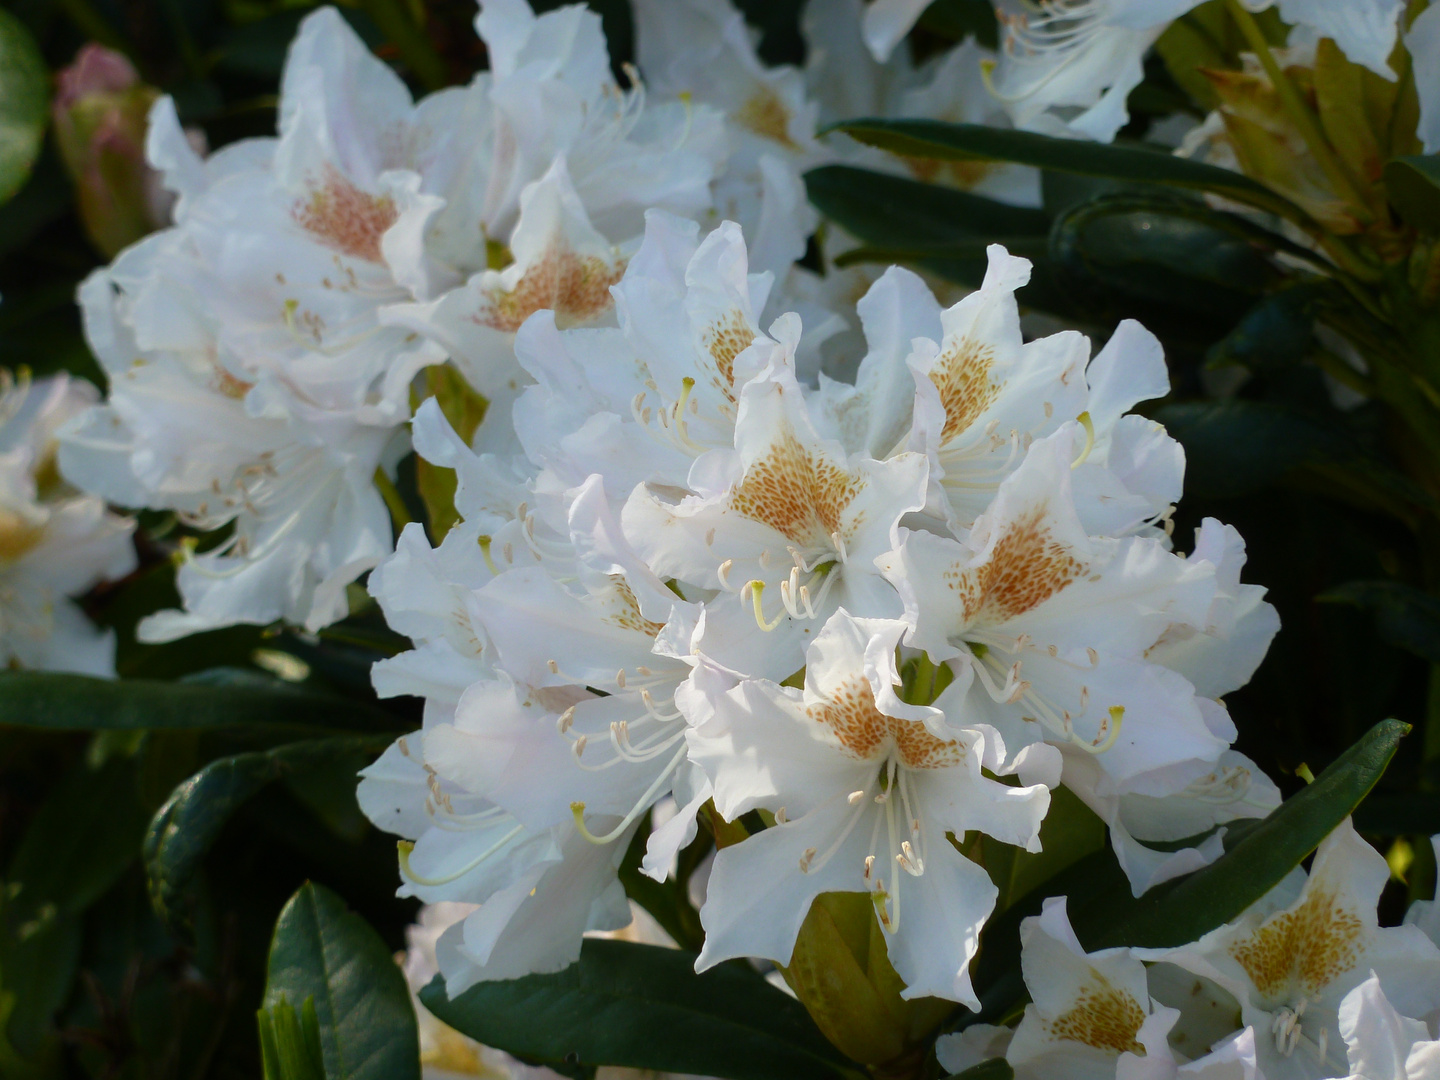 Weißer Rhododendron mit braun